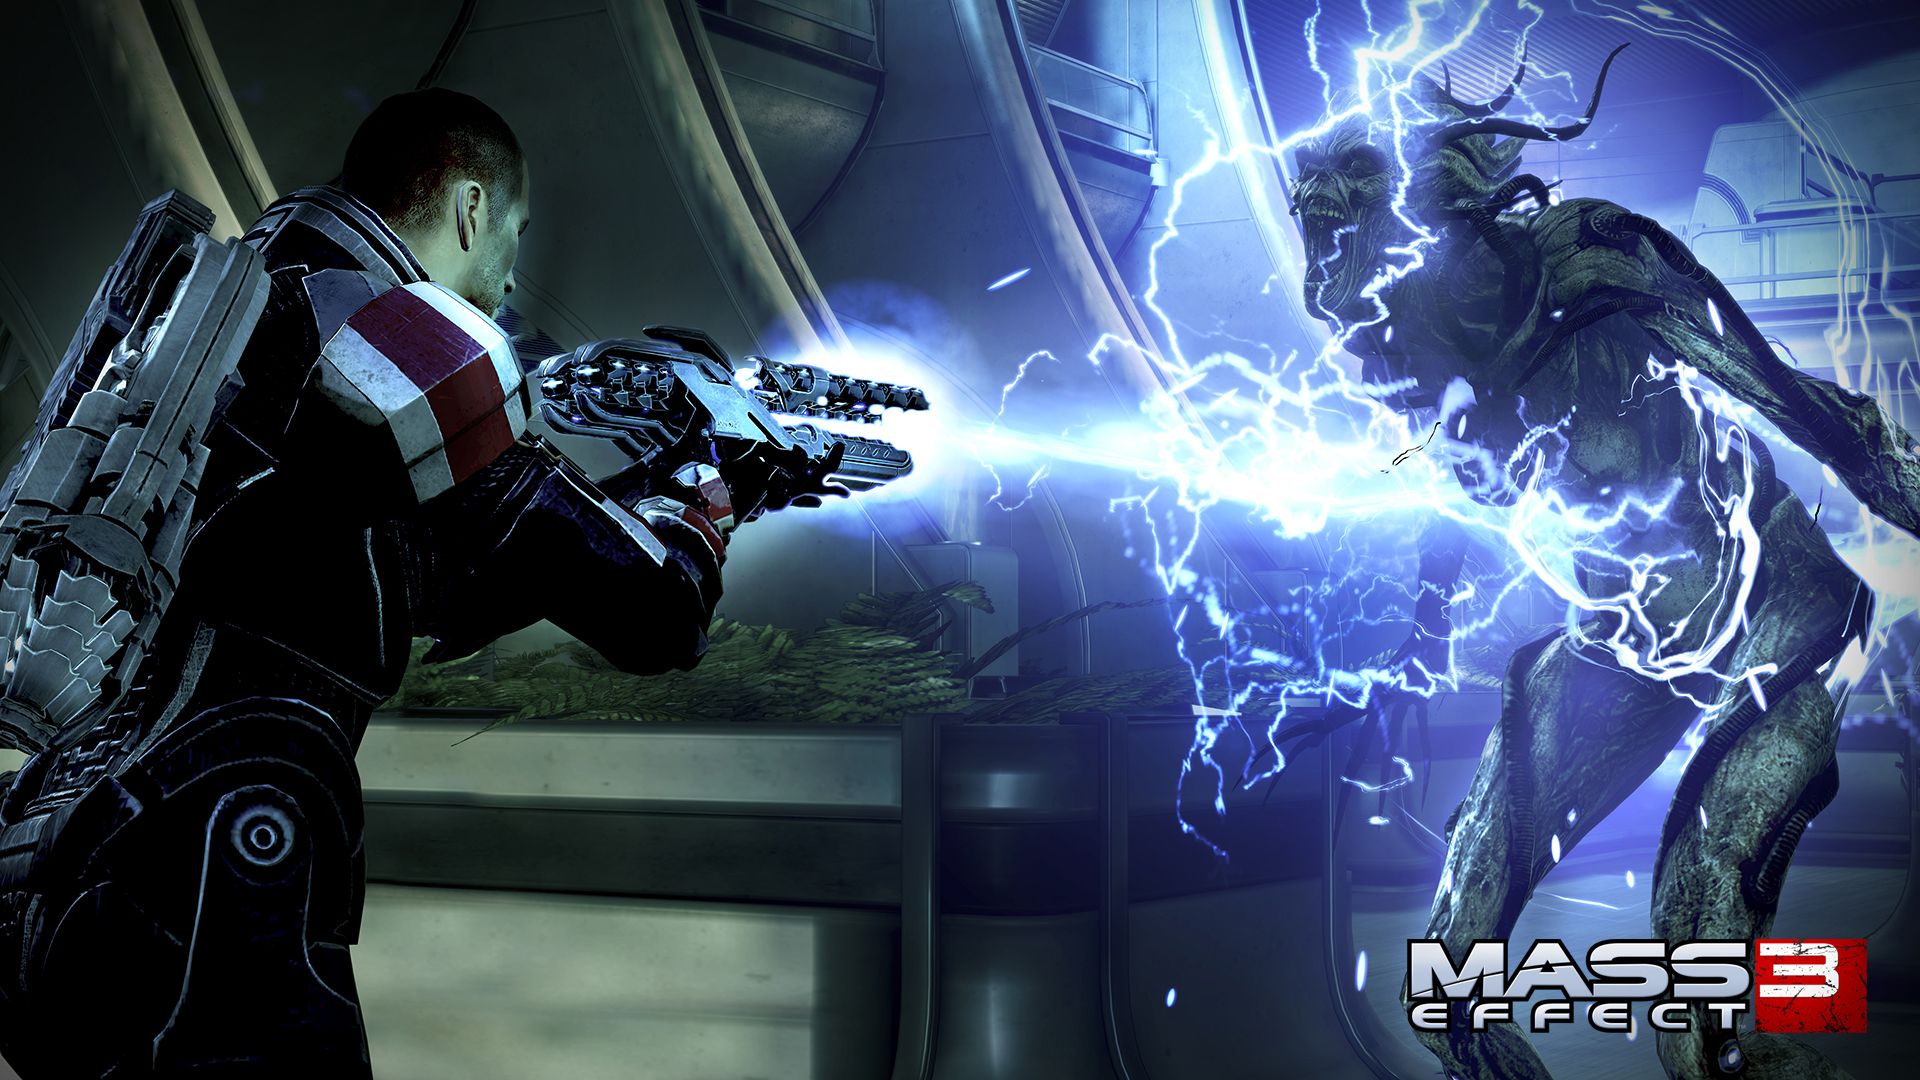 Reegar Carbine From Mass Effect 3